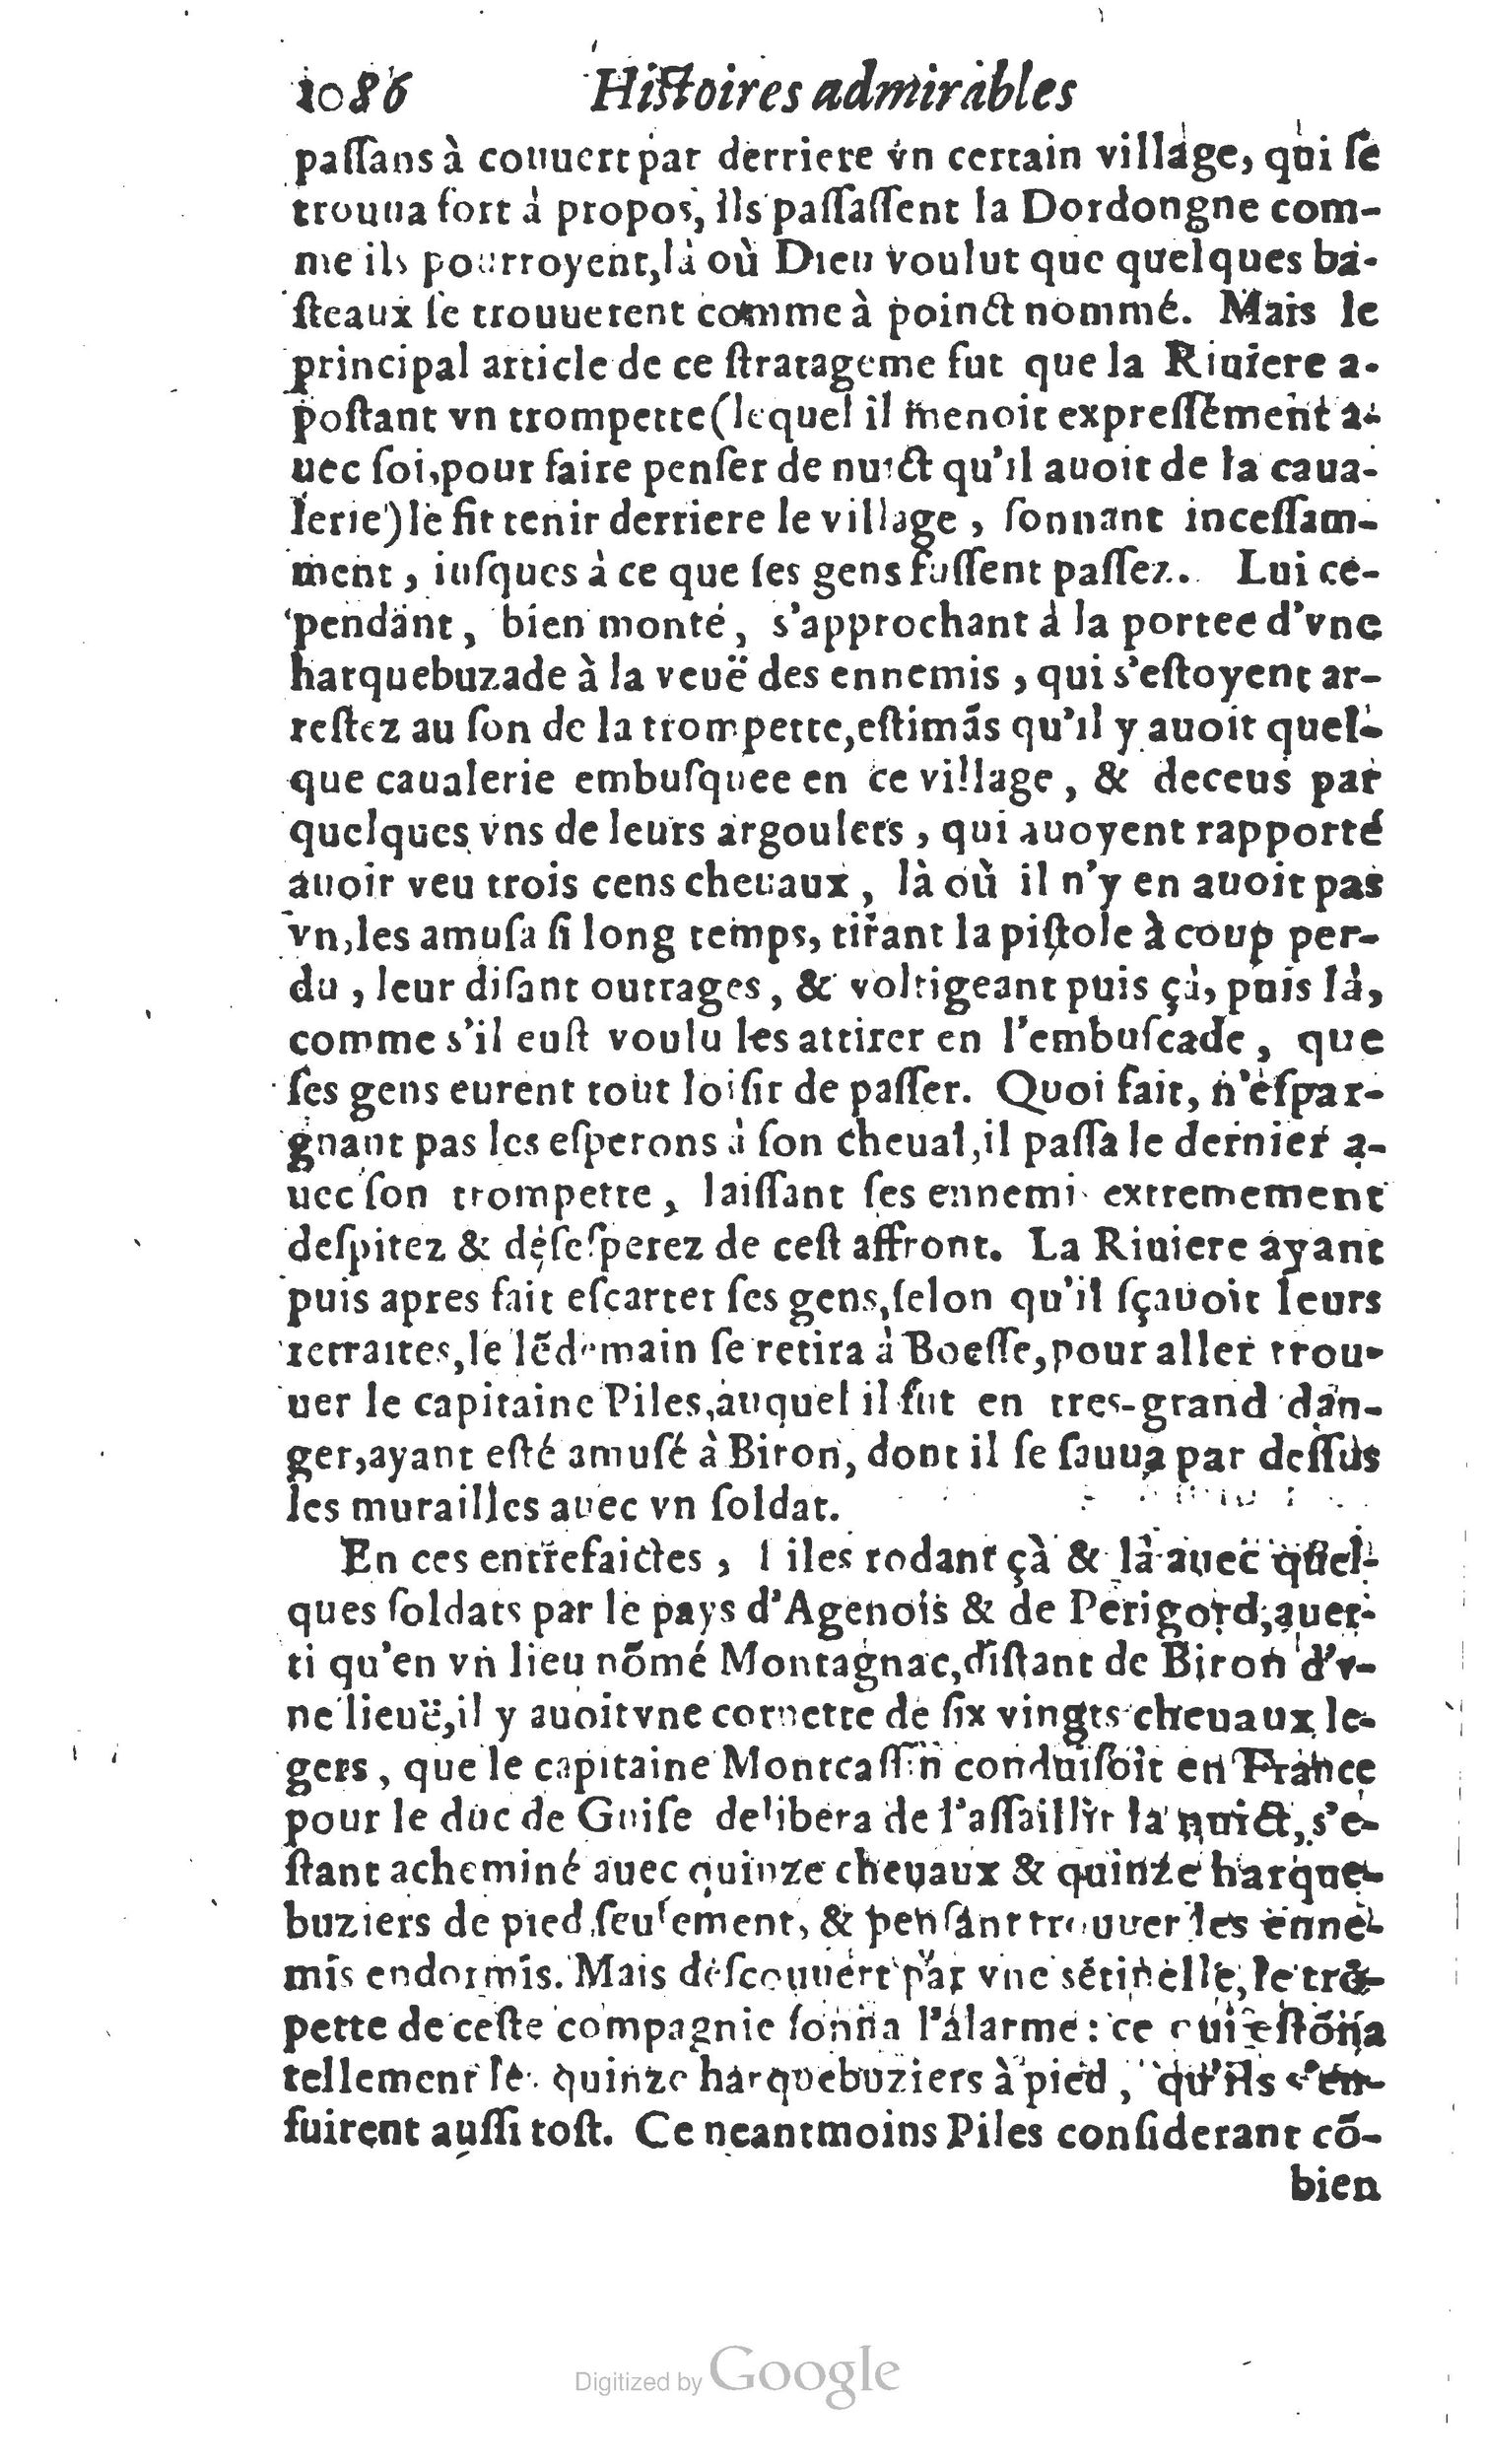 1610 Trésor d’histoires admirables et mémorables de nostre temps Marceau Princeton_Page_1105.jpg